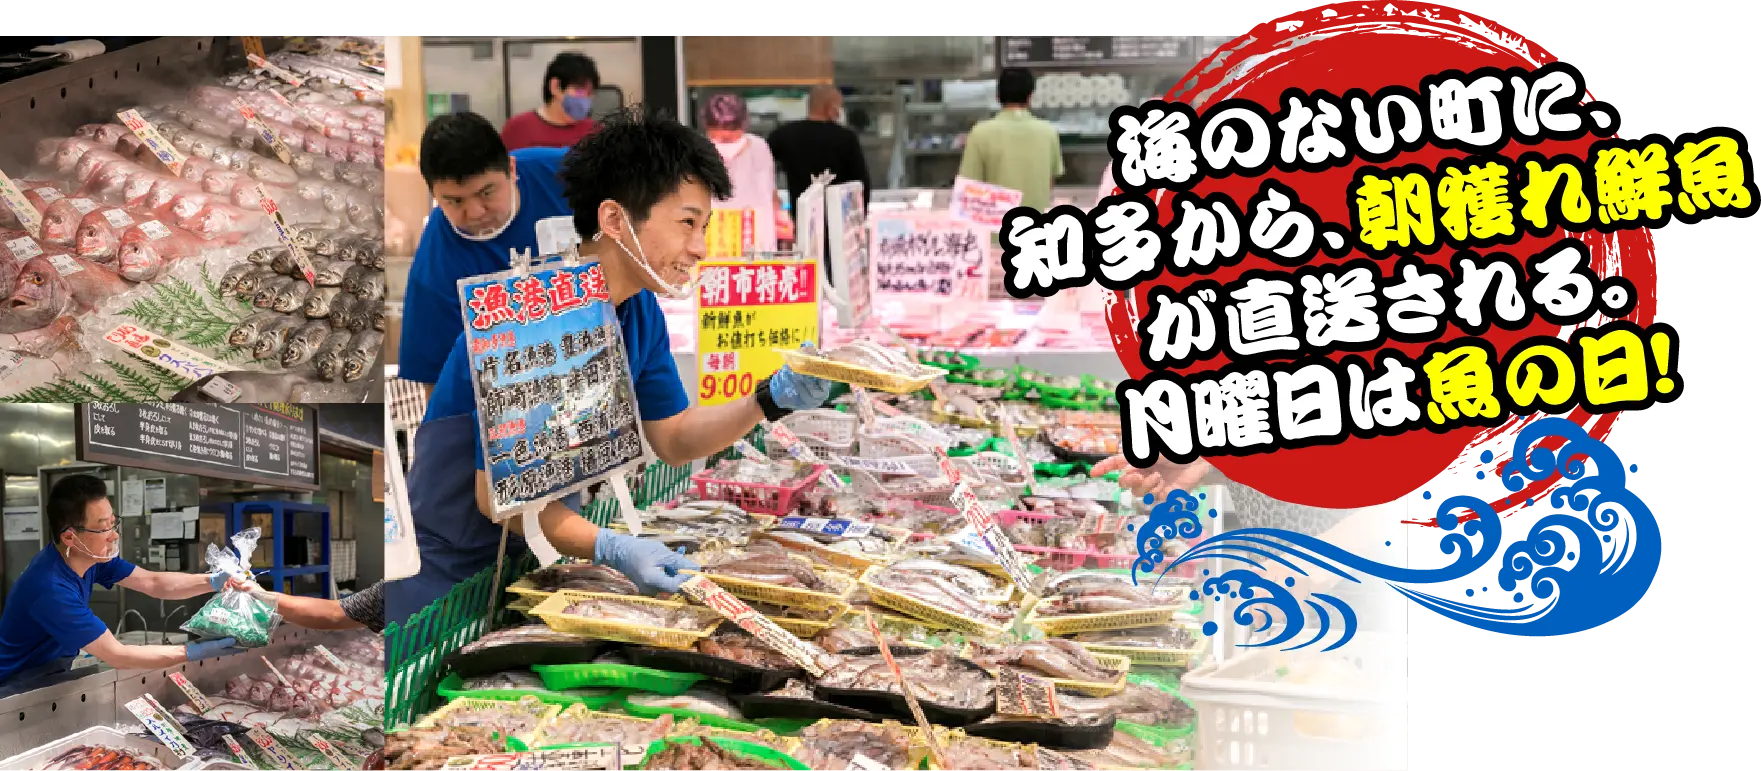 海のない町に、知多から、朝獲れ鮮魚が直送される。月曜日は魚の日！